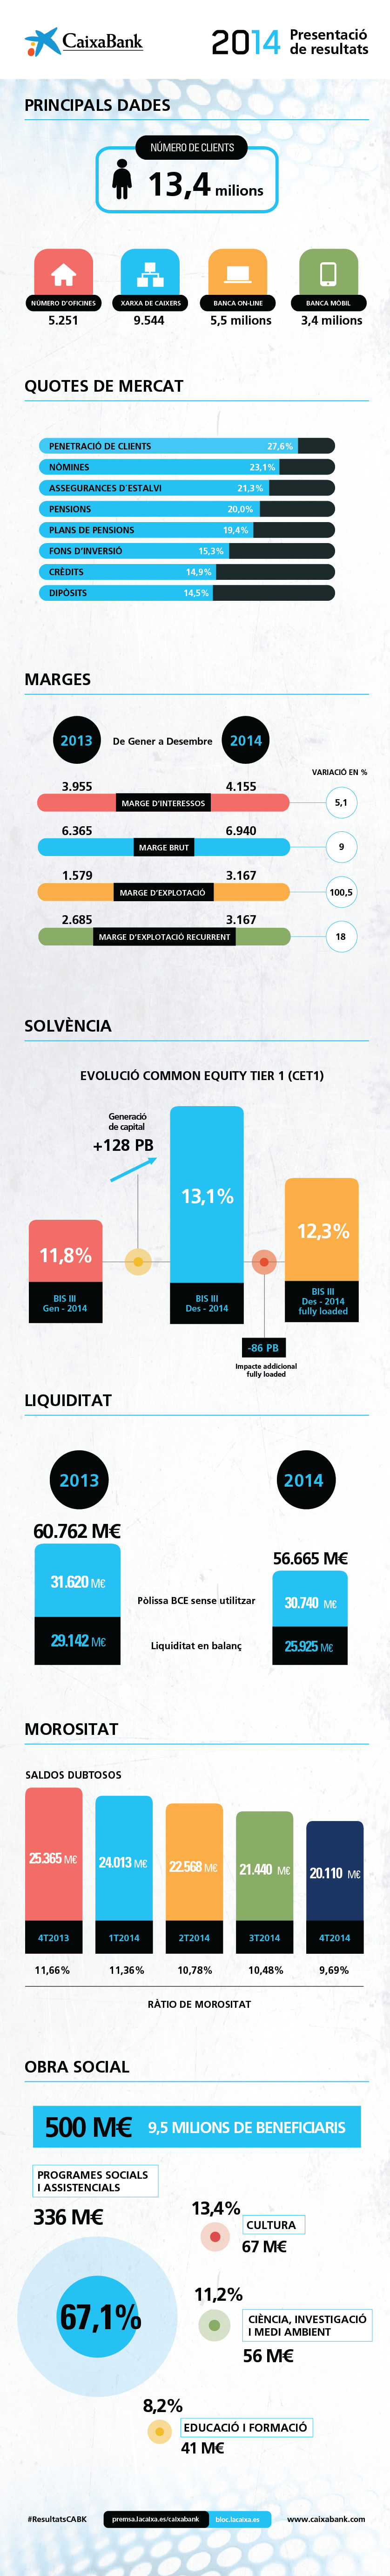 Resultats de CaixaBank 2014 - infografia